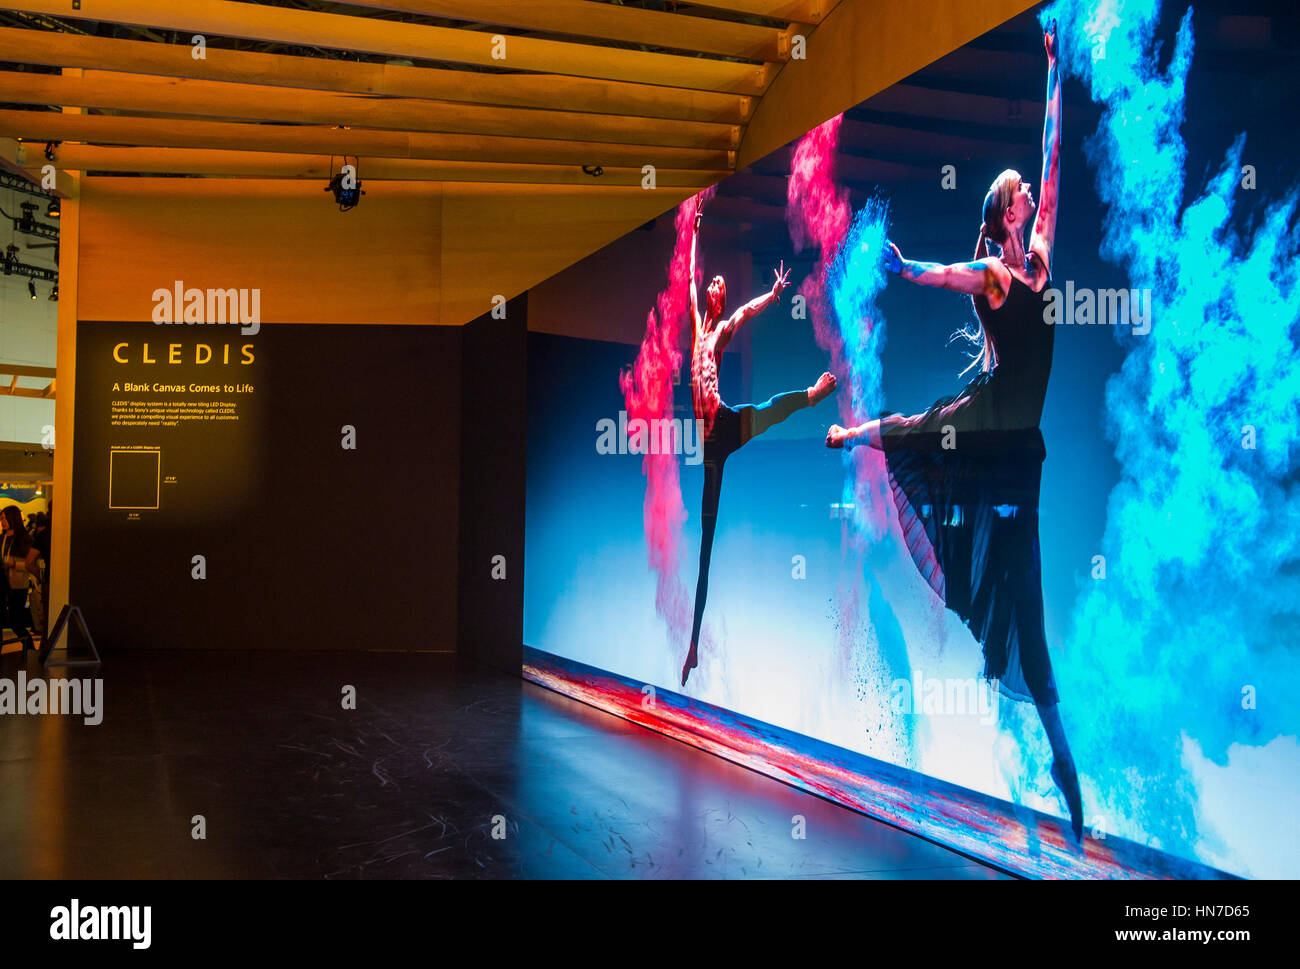 Mur vidéo au stand Sony au CES de Las Vegas , CES est le premier consommateur mondial-electronics show. Banque D'Images